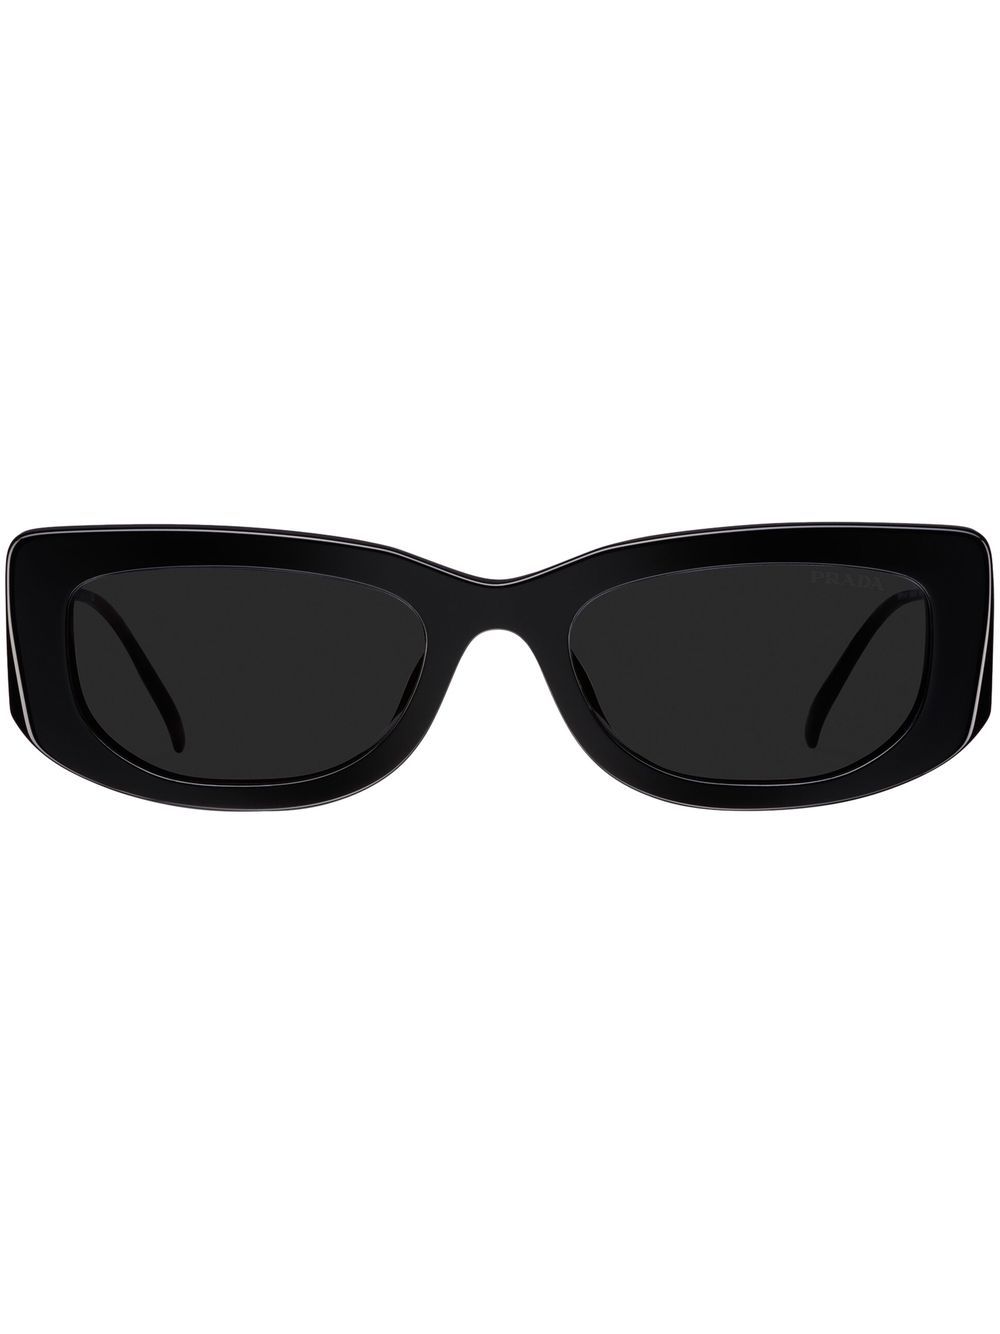 Symbole Rectangular Sunglasses in White - Prada